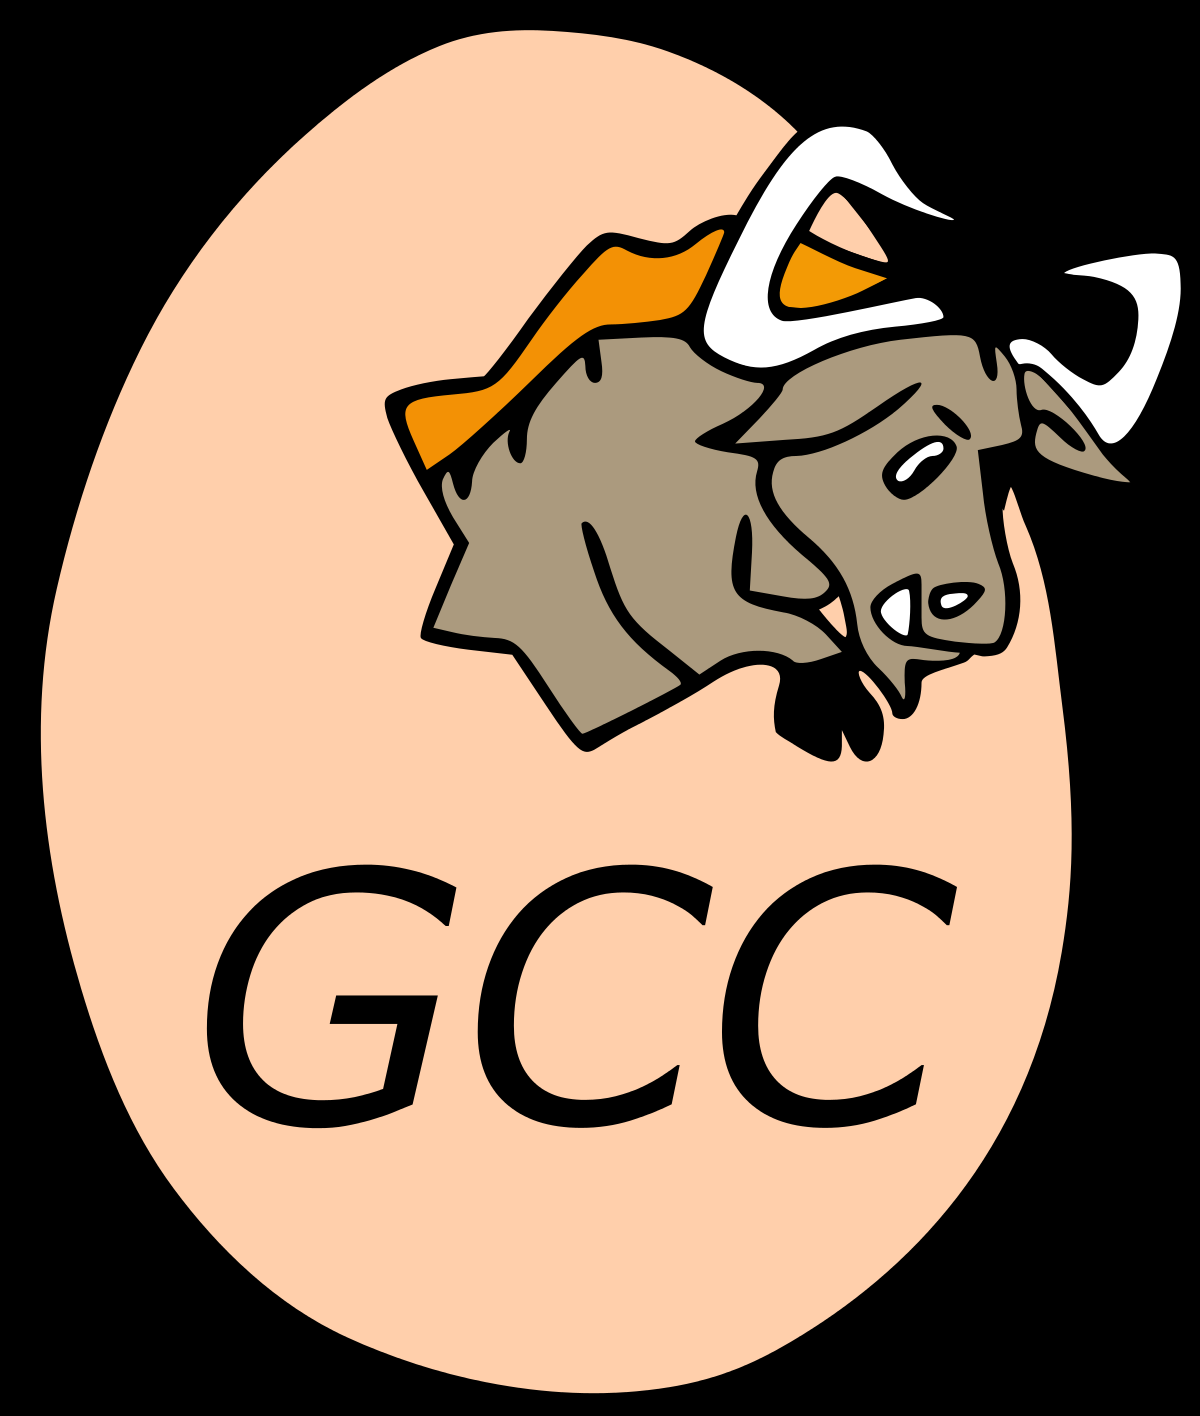 Gnu c compiler gcc. GCC компилятор. GCC лого. GNU Compiler collection. GNU Compiler collection (GCC);.